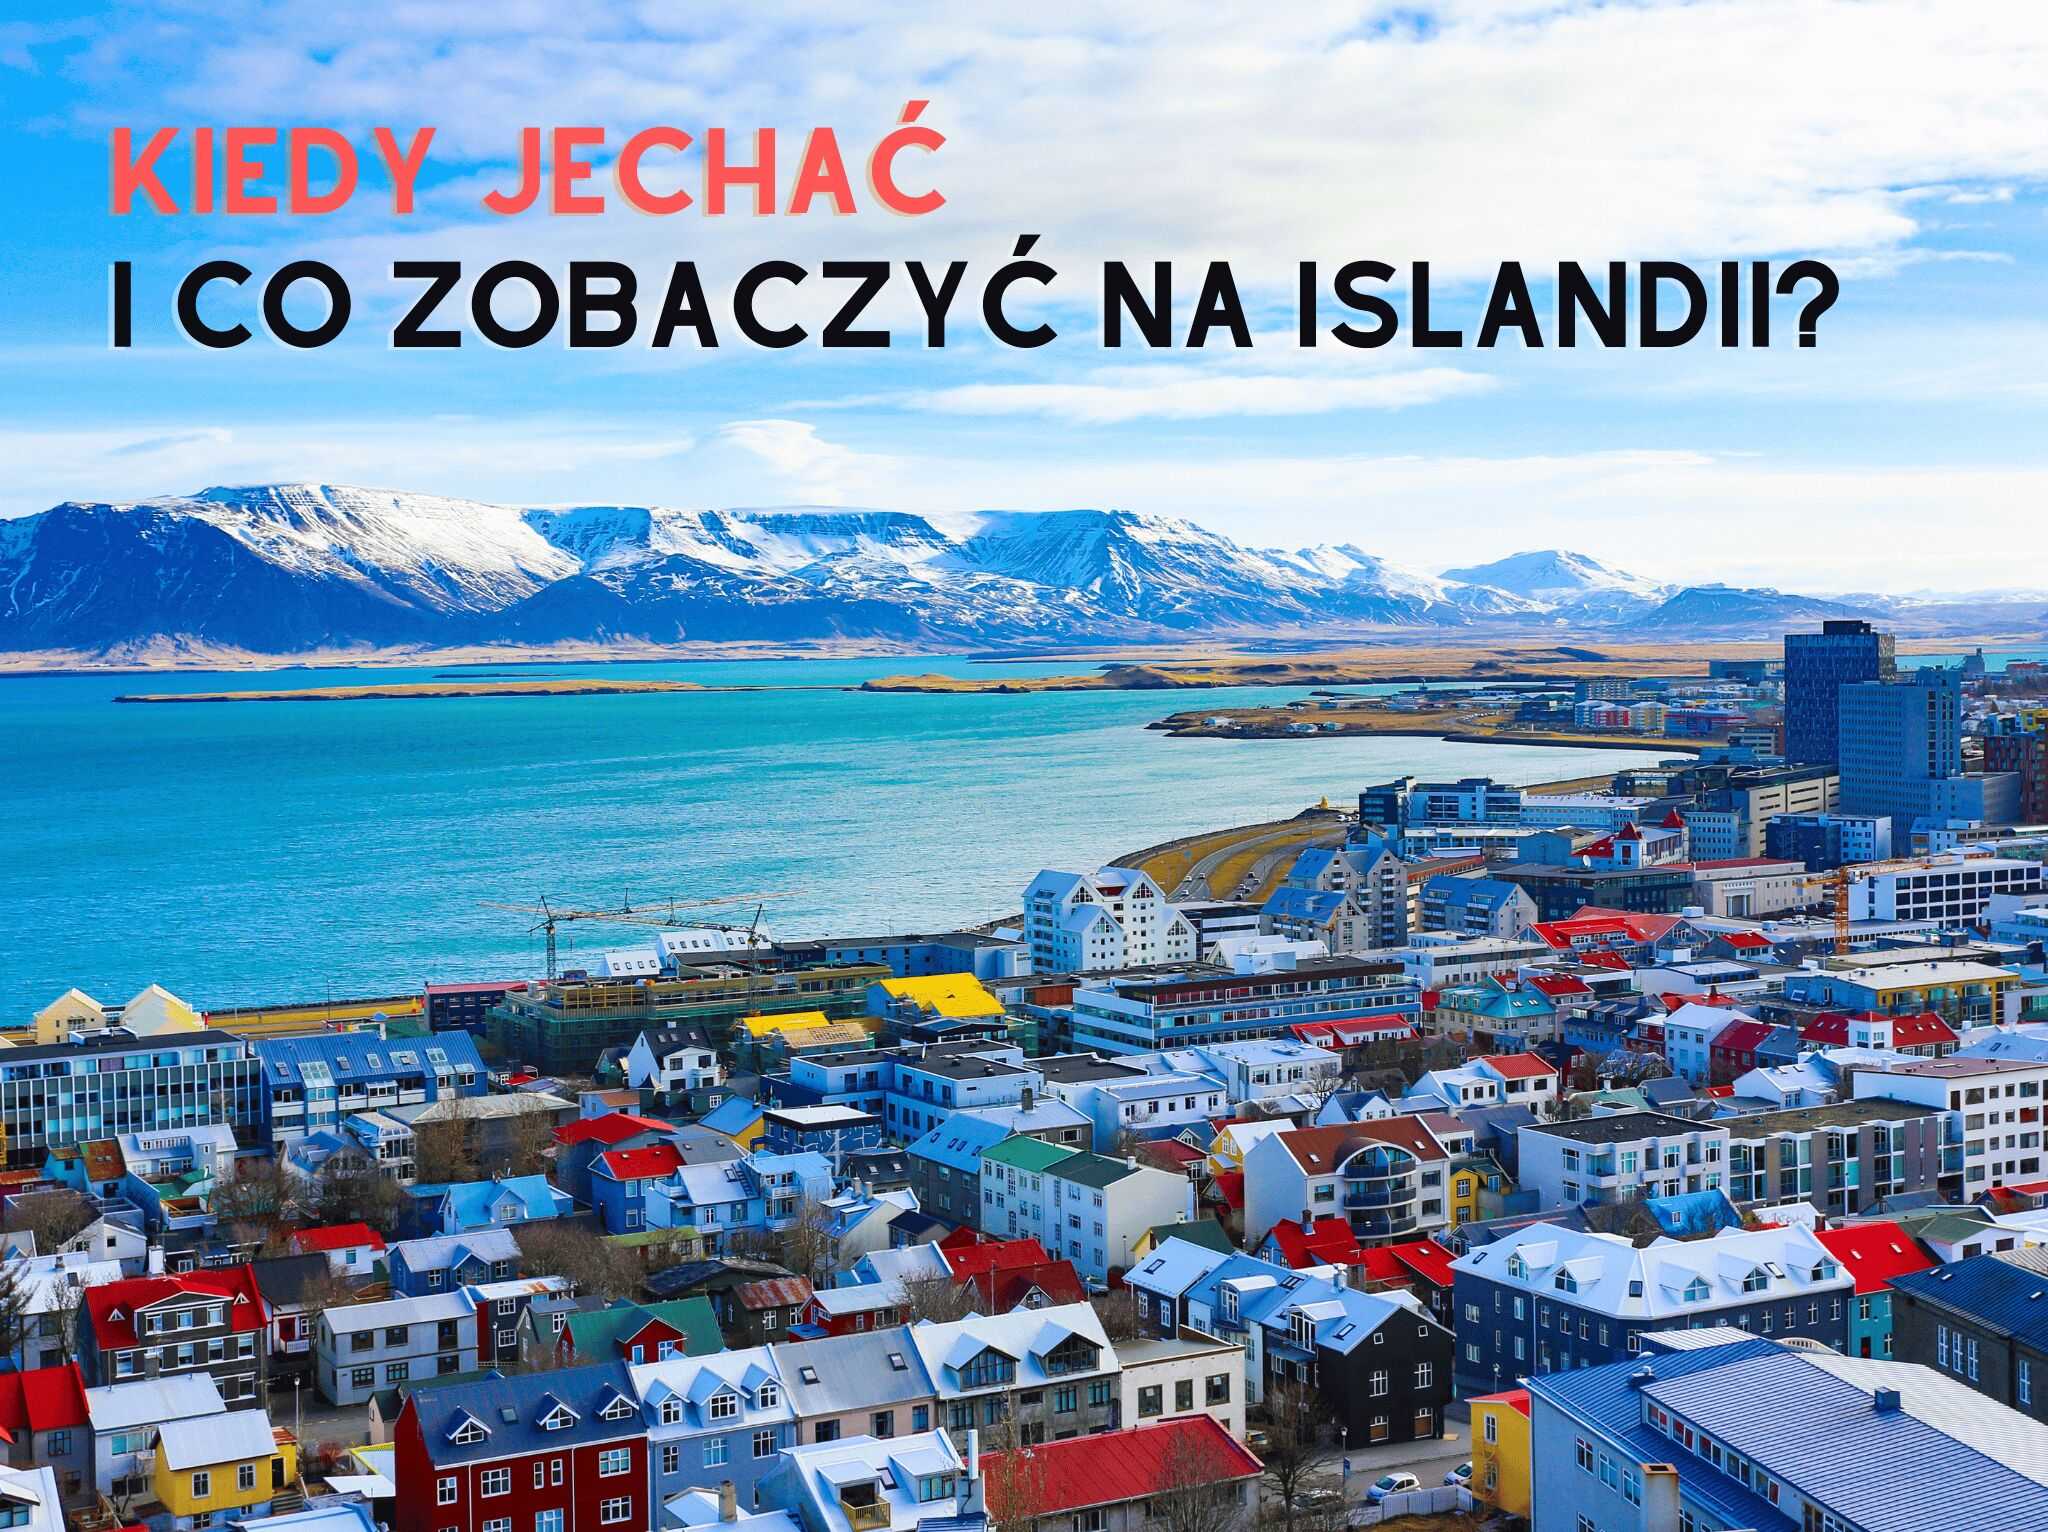 Kiedy jechać i co zobaczyć na Islandii? - blog 4challenge